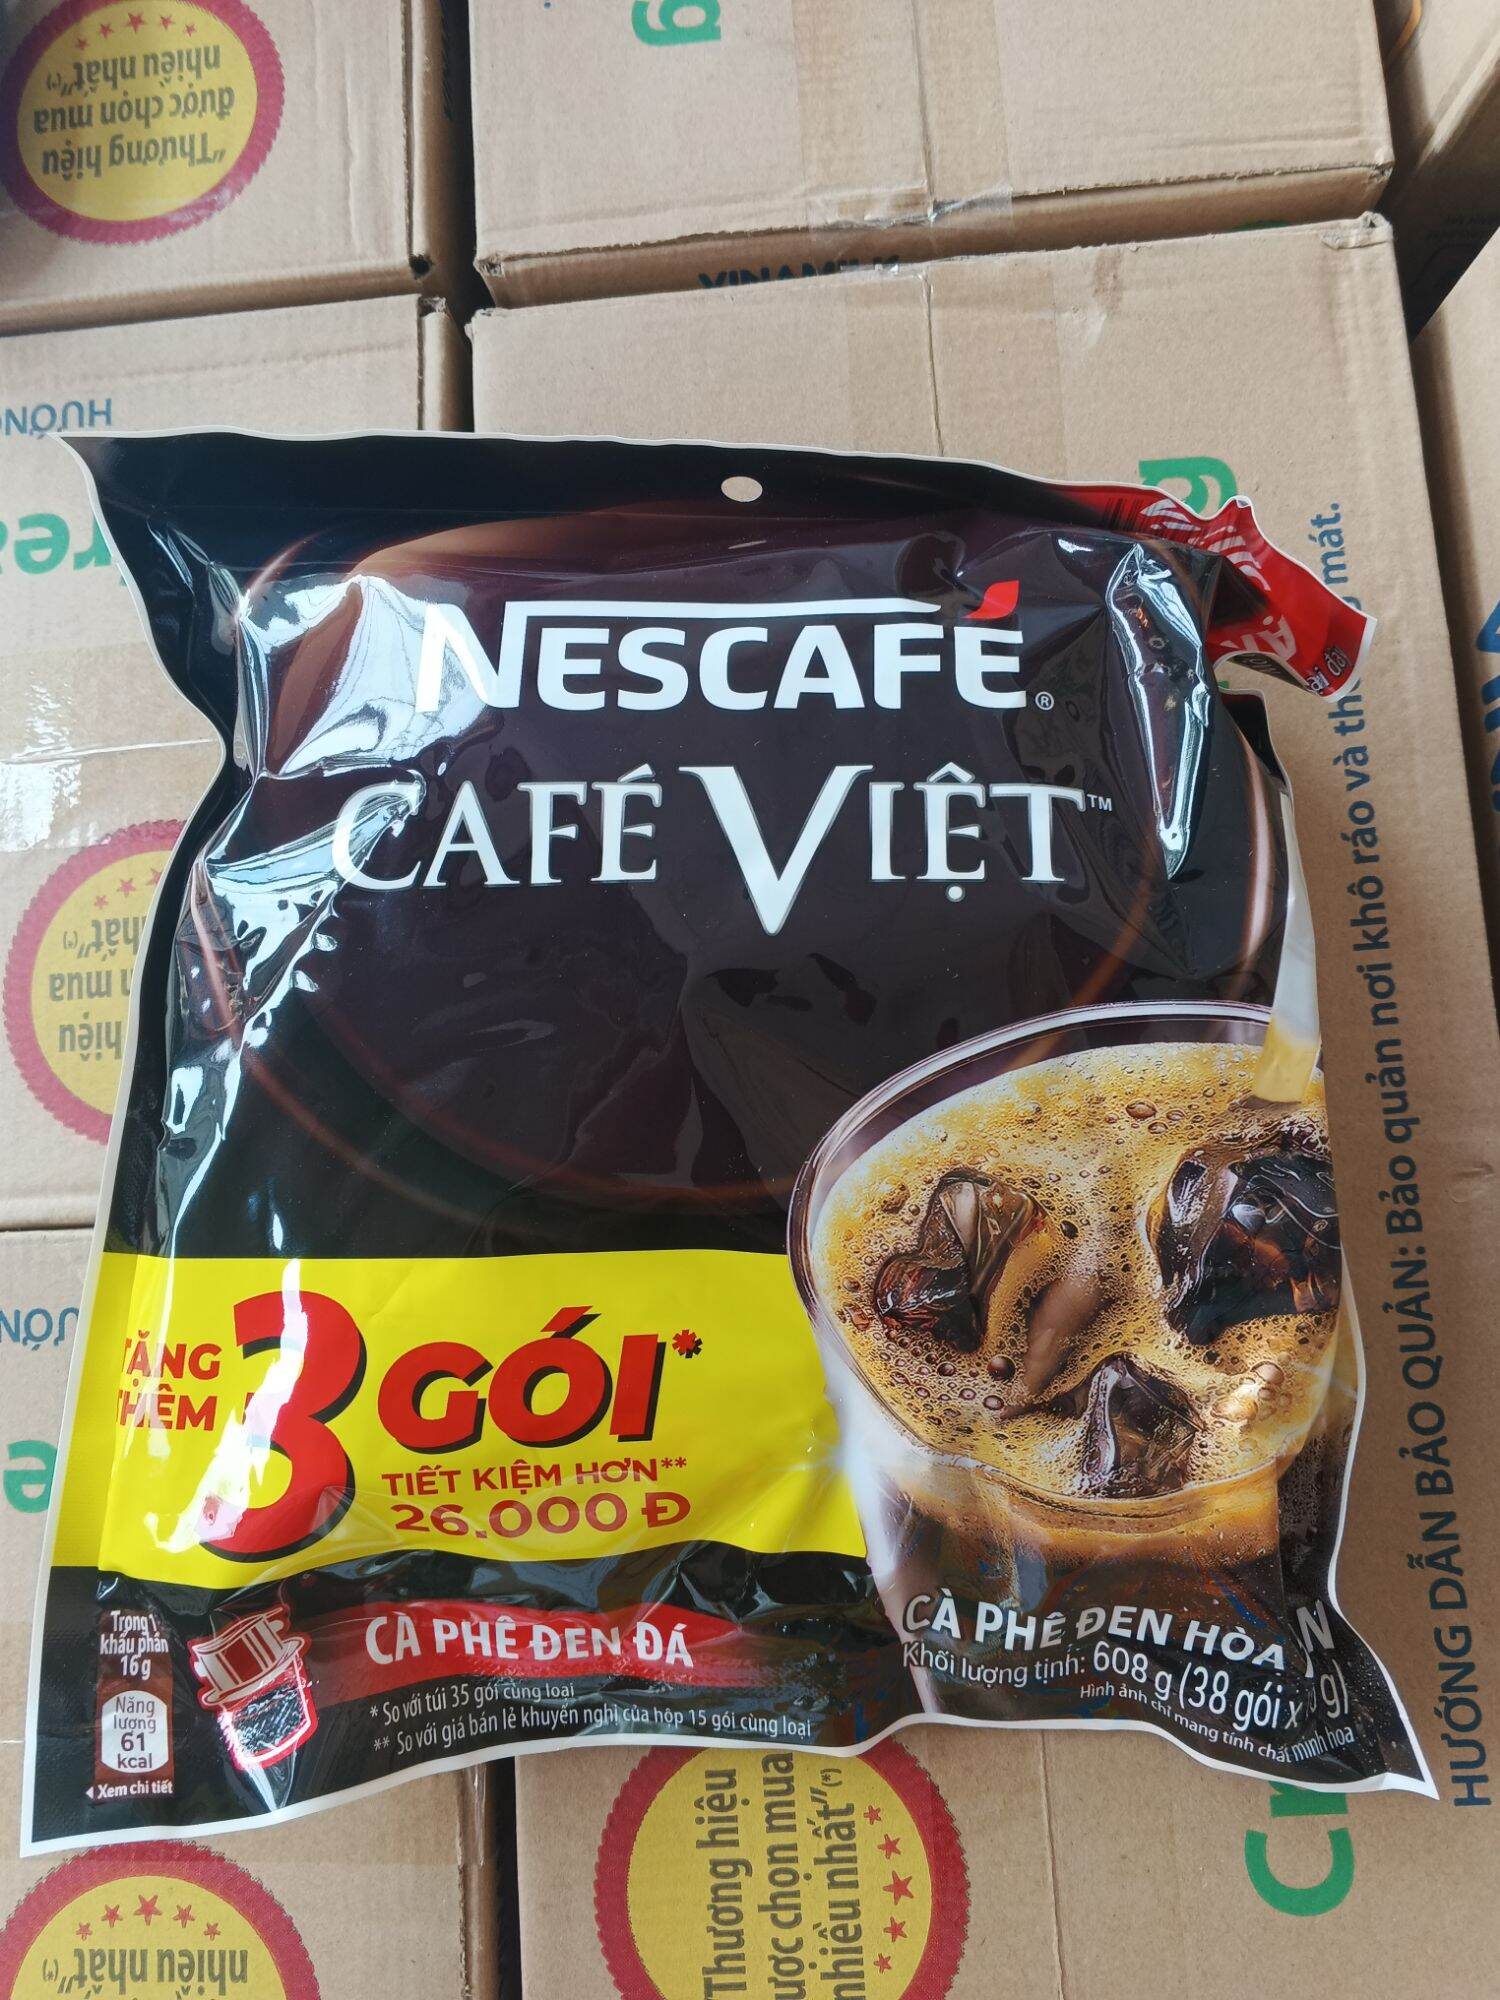 Cà phê đen đá NesCafé Café Việt bich 560g 35gói tang 3 goi